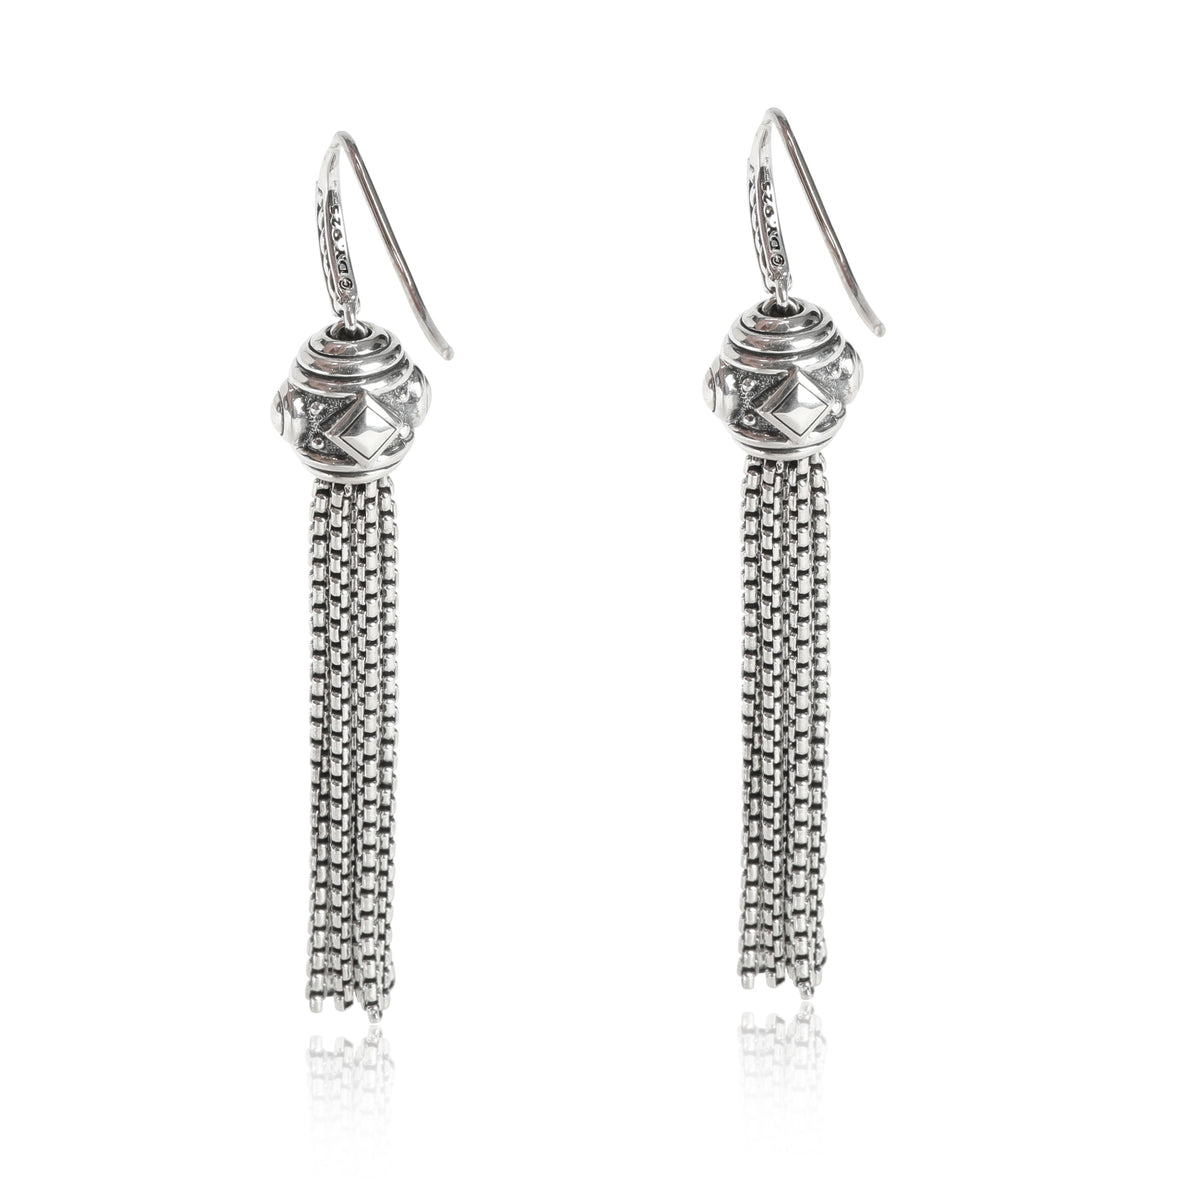 David Yurman Renaissance Diamond Earrings in Sterling Silver 0.1 CTW